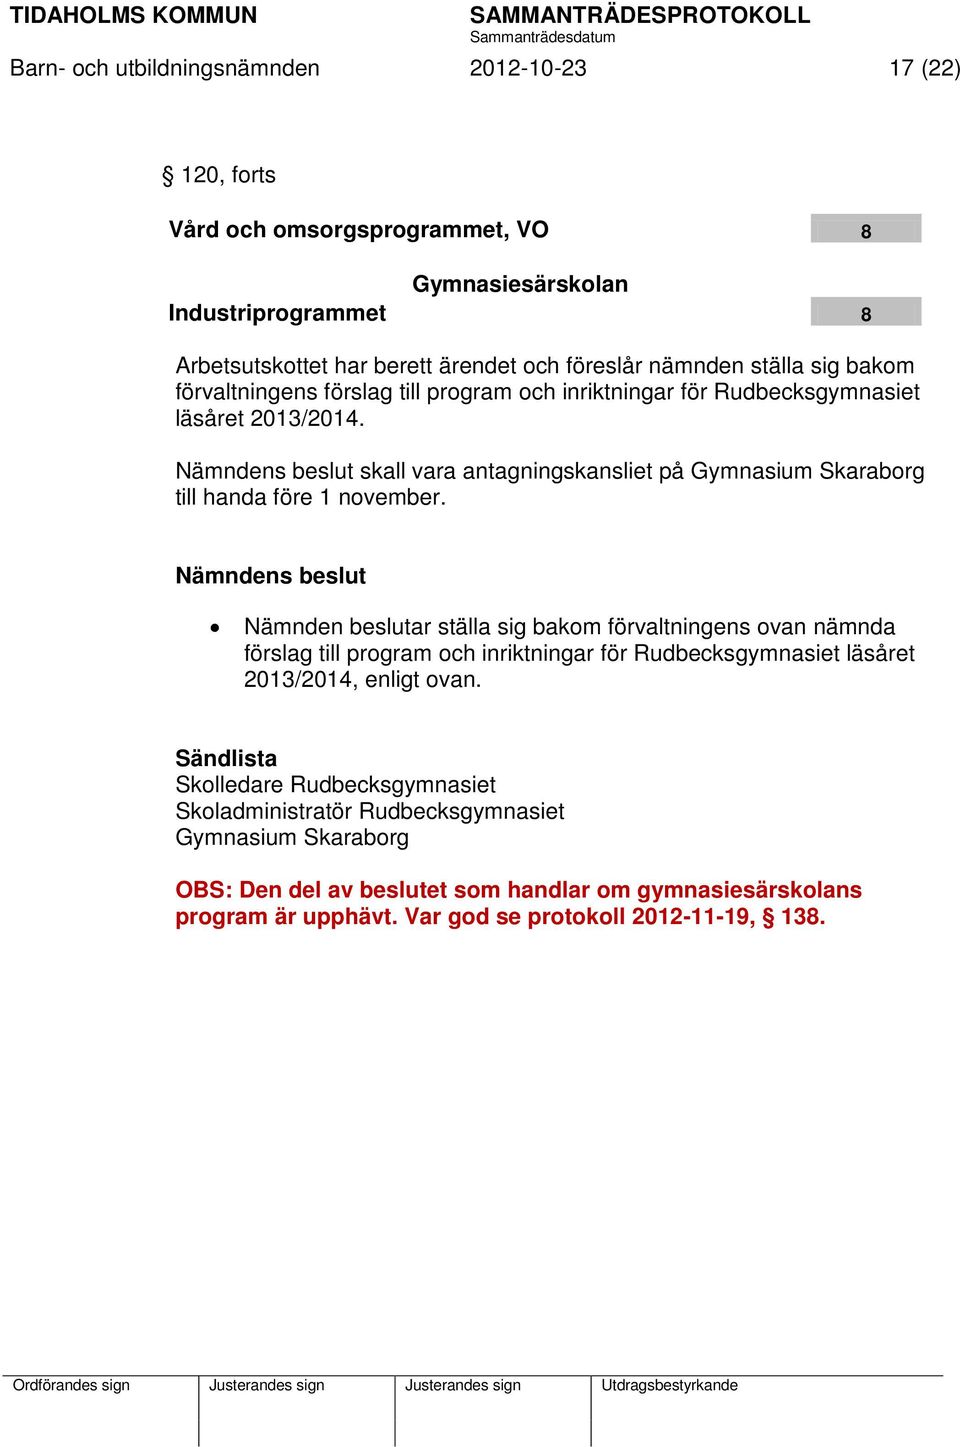 Nämndens beslut skall vara antagningskansliet på Gymnasium Skaraborg till handa före 1 november.